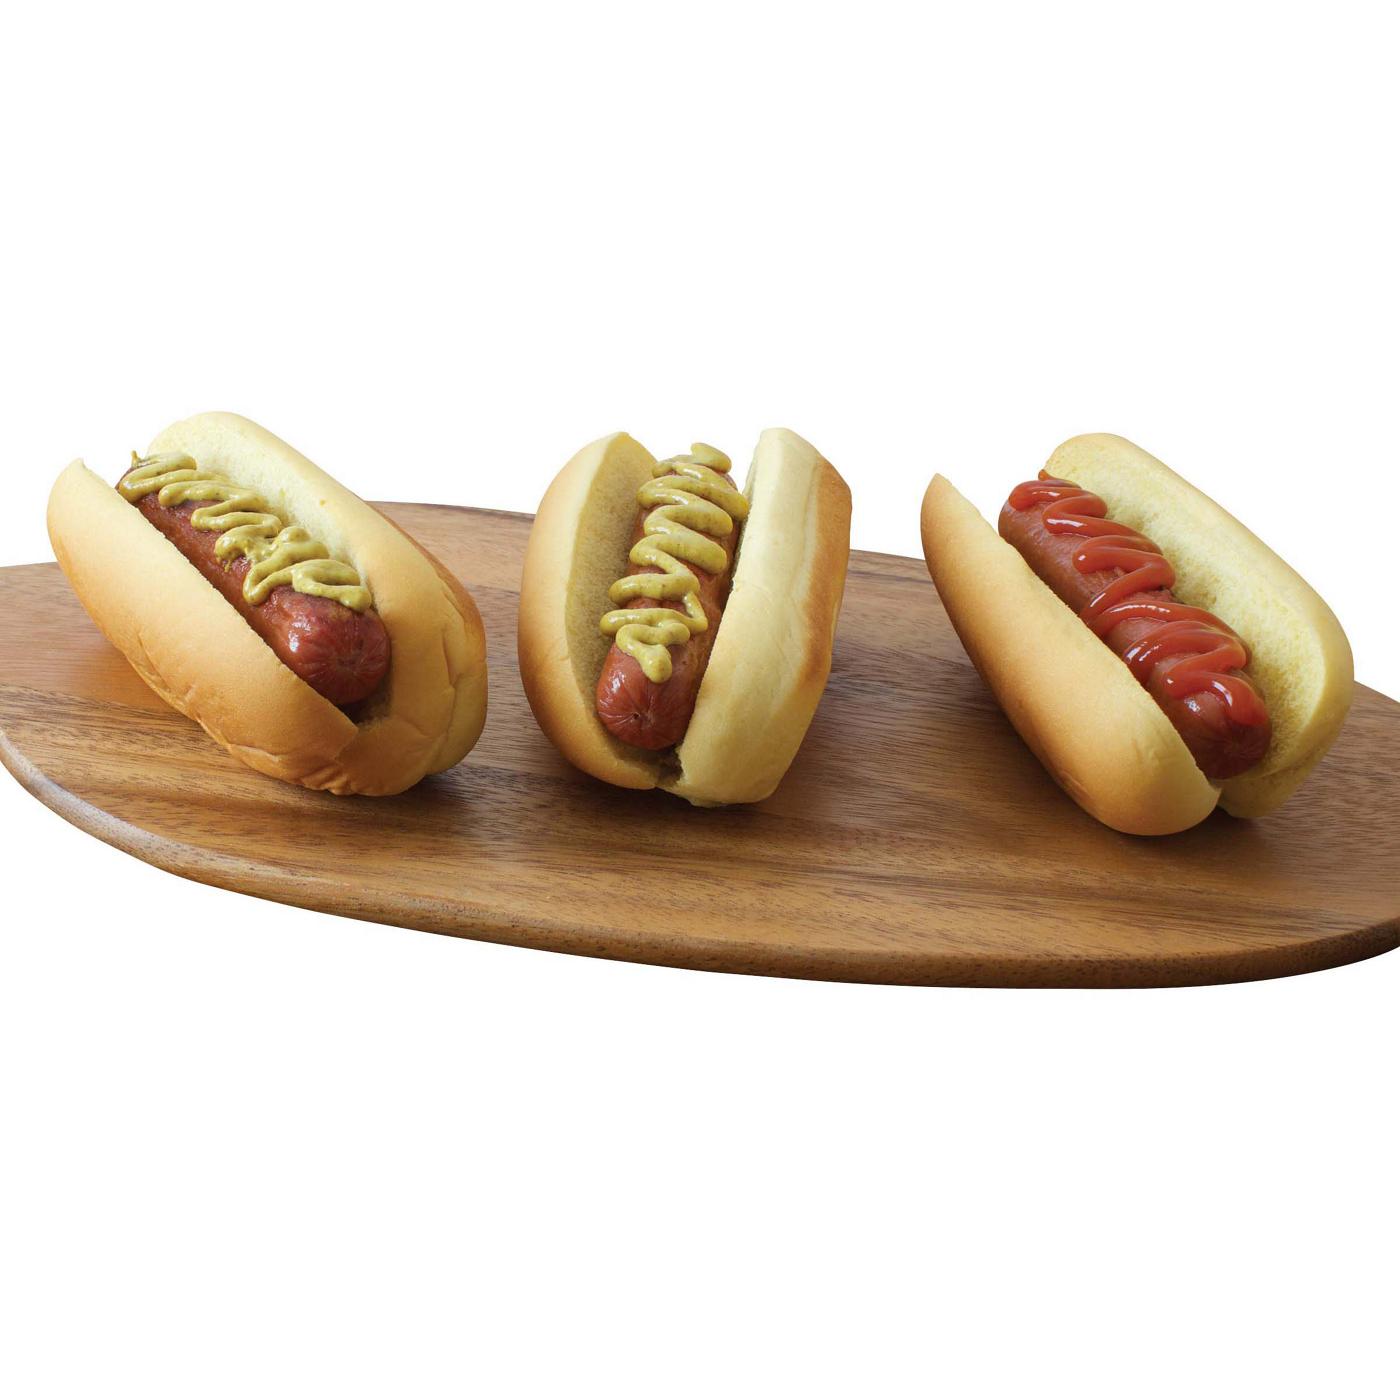 Applegate Naturals Uncured Beef Hot Dog; image 4 of 5